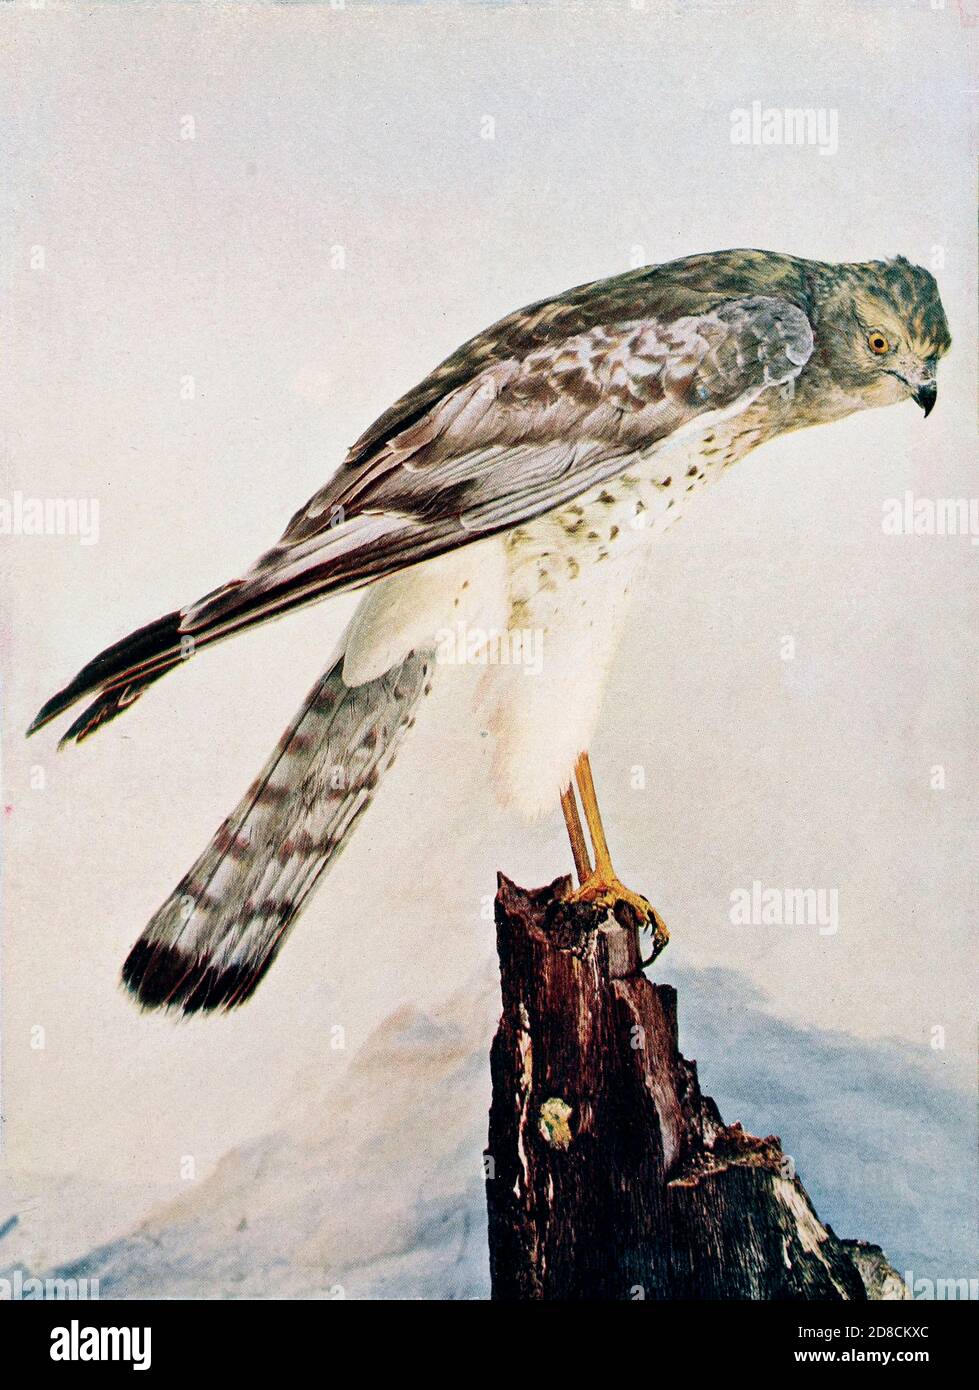 Der Circus hudsonius (nördliche Harrier [hier als Marsh Hawk]) ist ein Raubvogel. Sie brütet in den nördlichen Teilen der nördlichen Hemisphäre in Kanada und den nördlichsten USA. From Birds : illustriert durch Farbfotografie : eine monatliche Serie. Kenntnisse über Vogelleben Vol. 1 Nr. 5 Mai 1897 Stockfoto